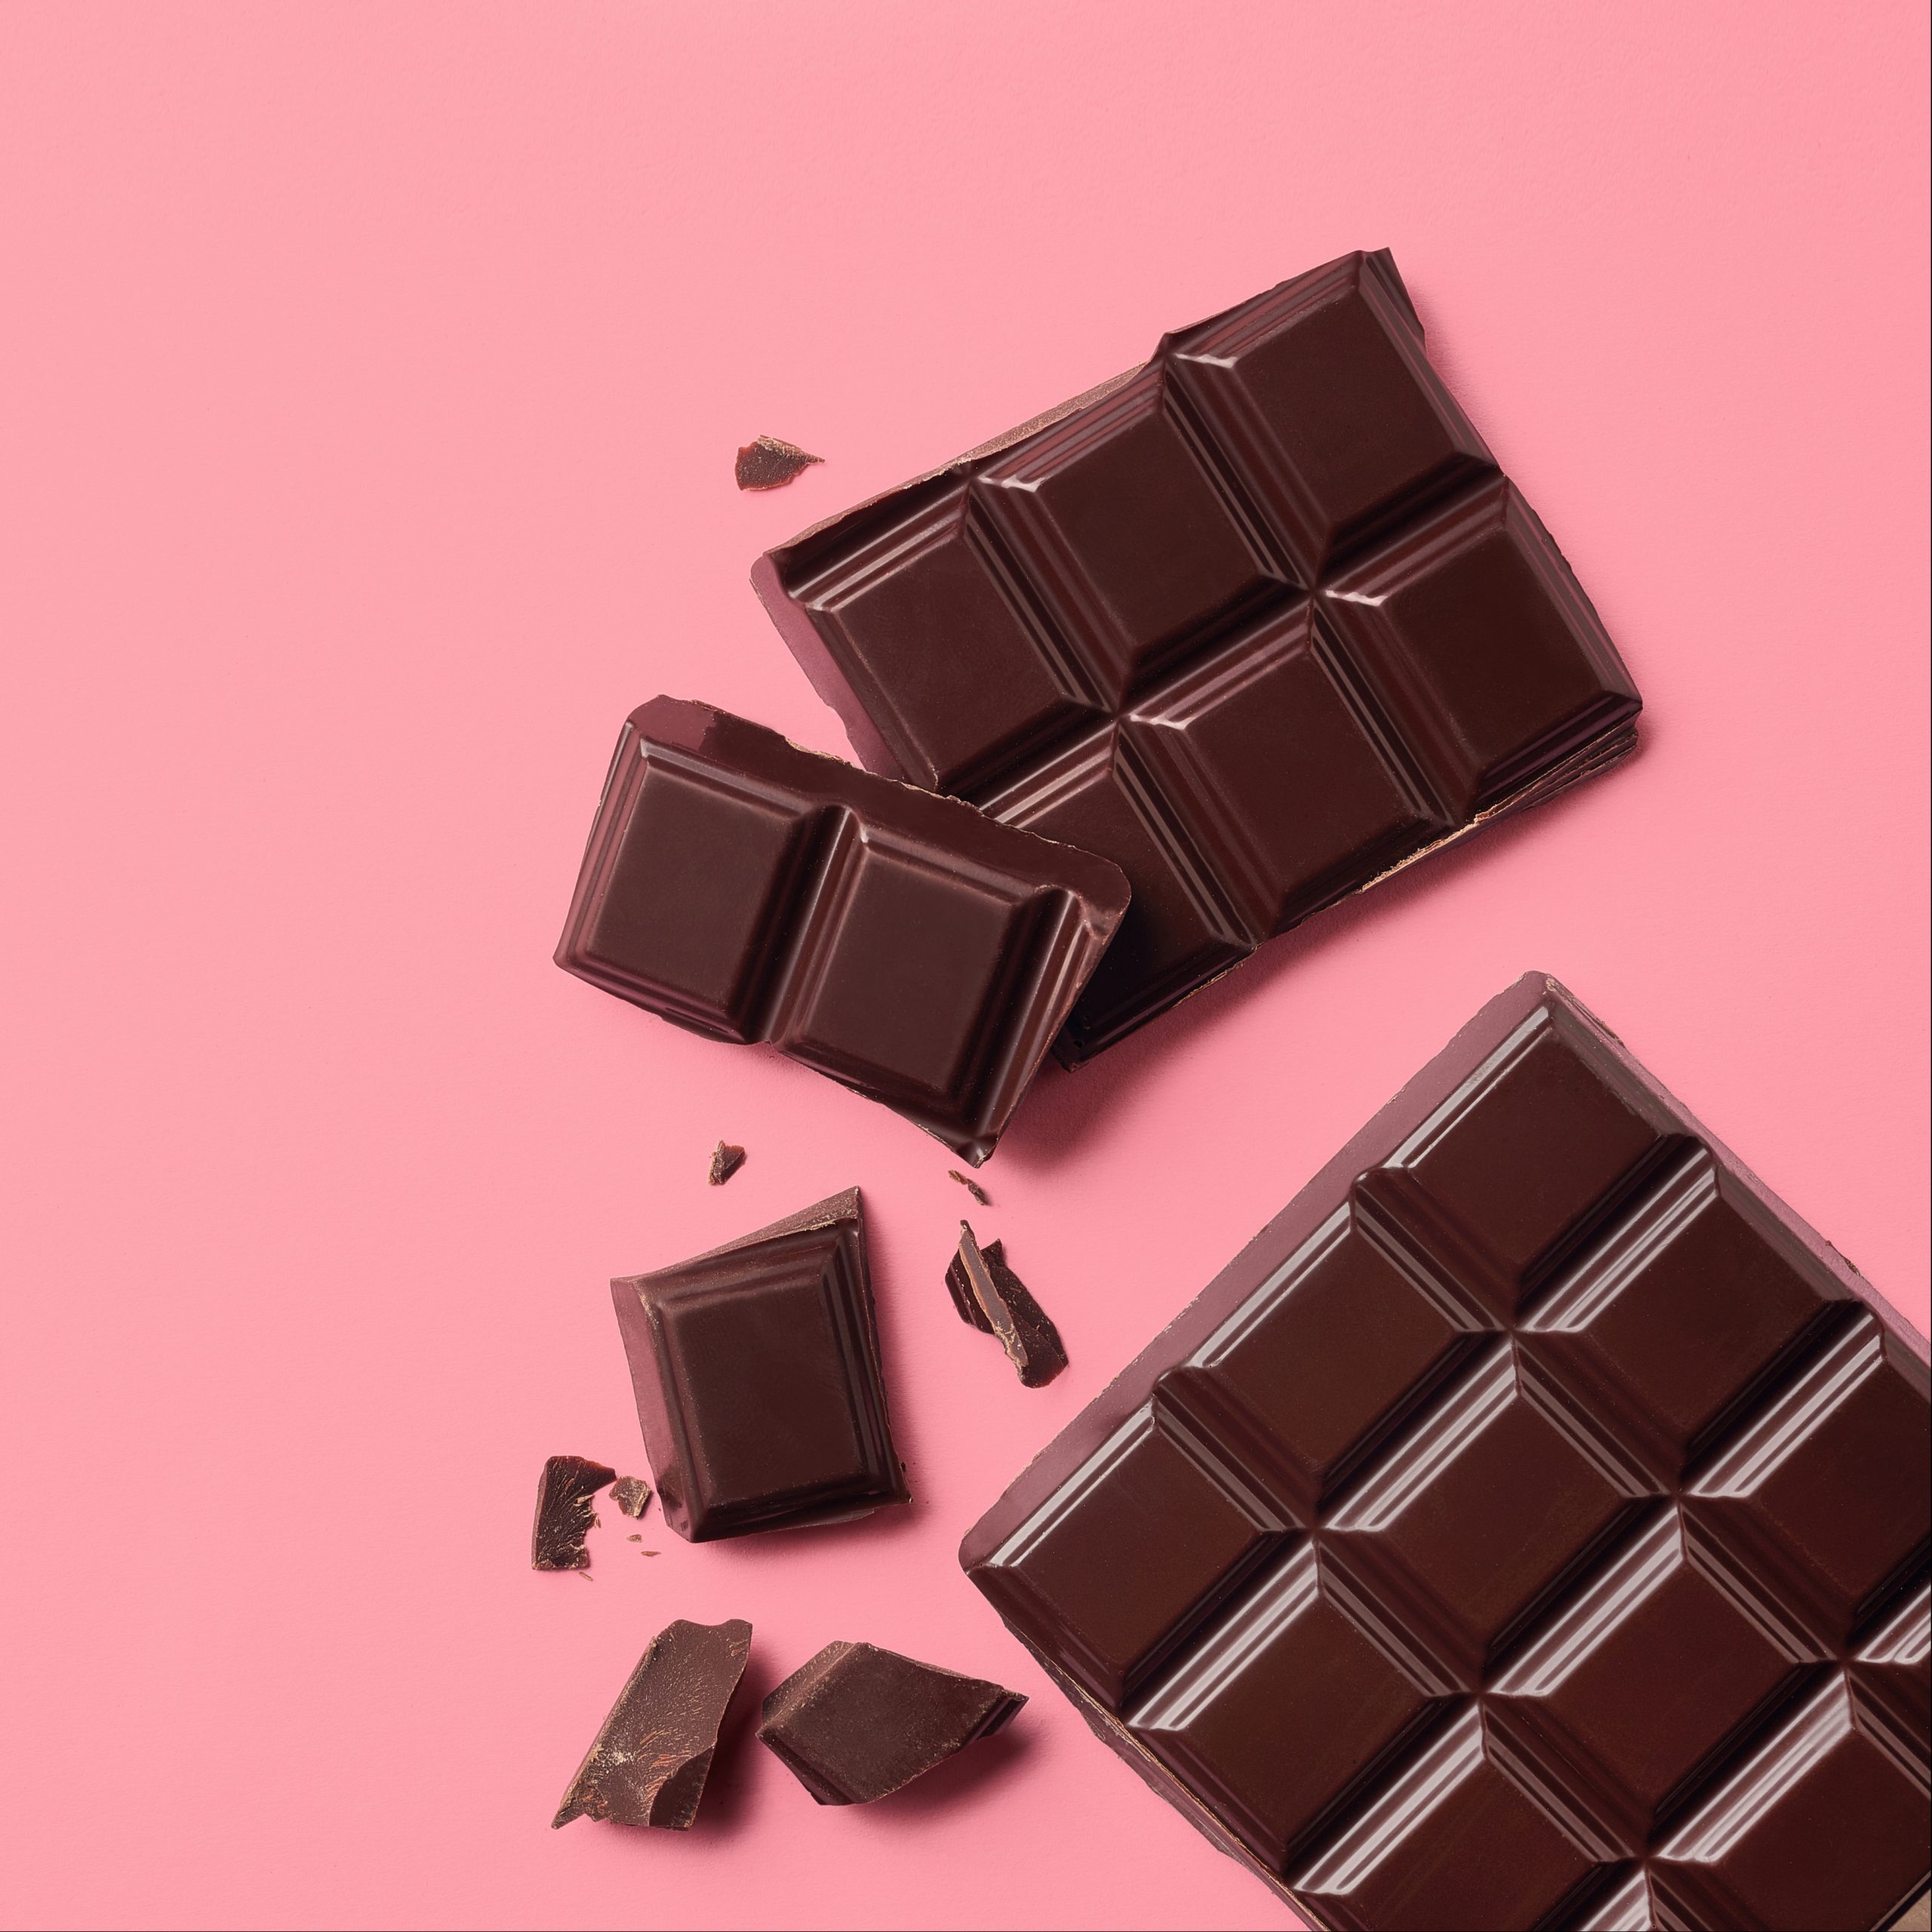 Chocolate Slim – Băutură (Ciocolată) De Slăbit » Cafe Star